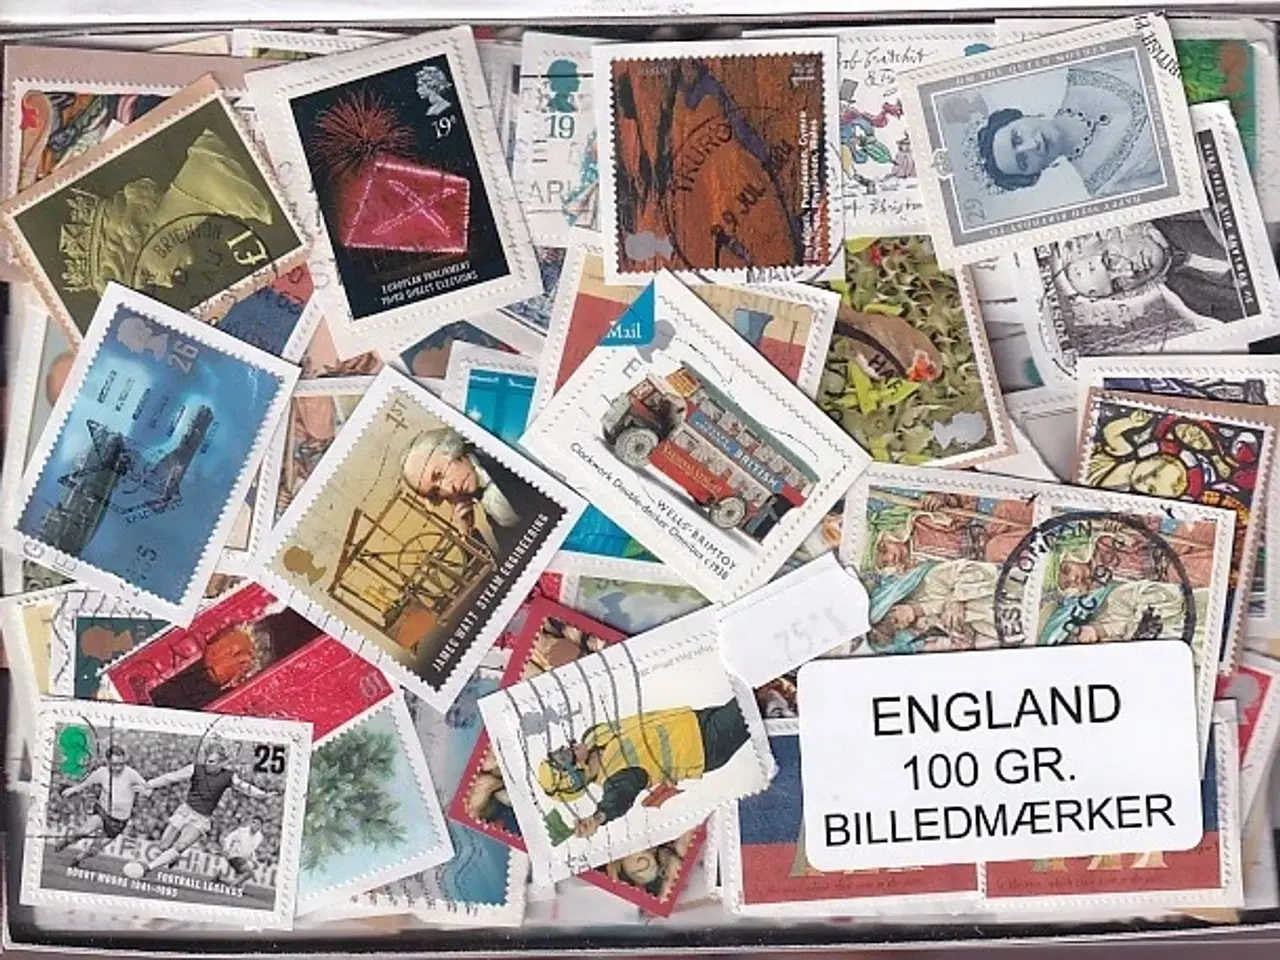 Billede 1 - England 100 g. Billedmærker -